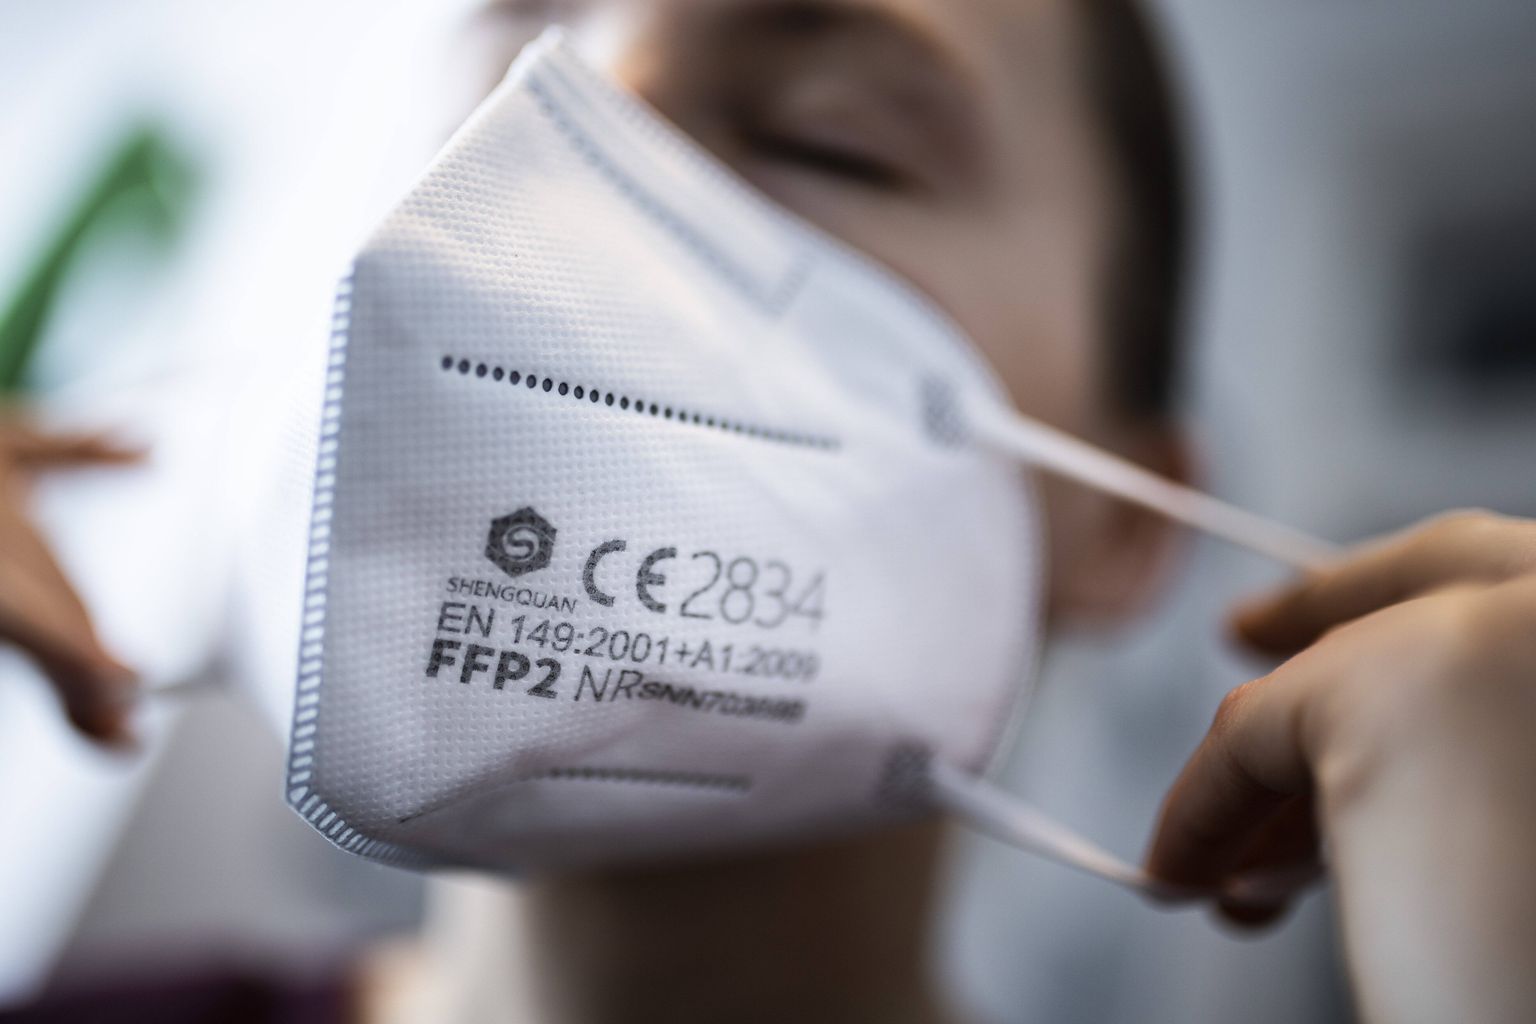 Respirators FFP2.